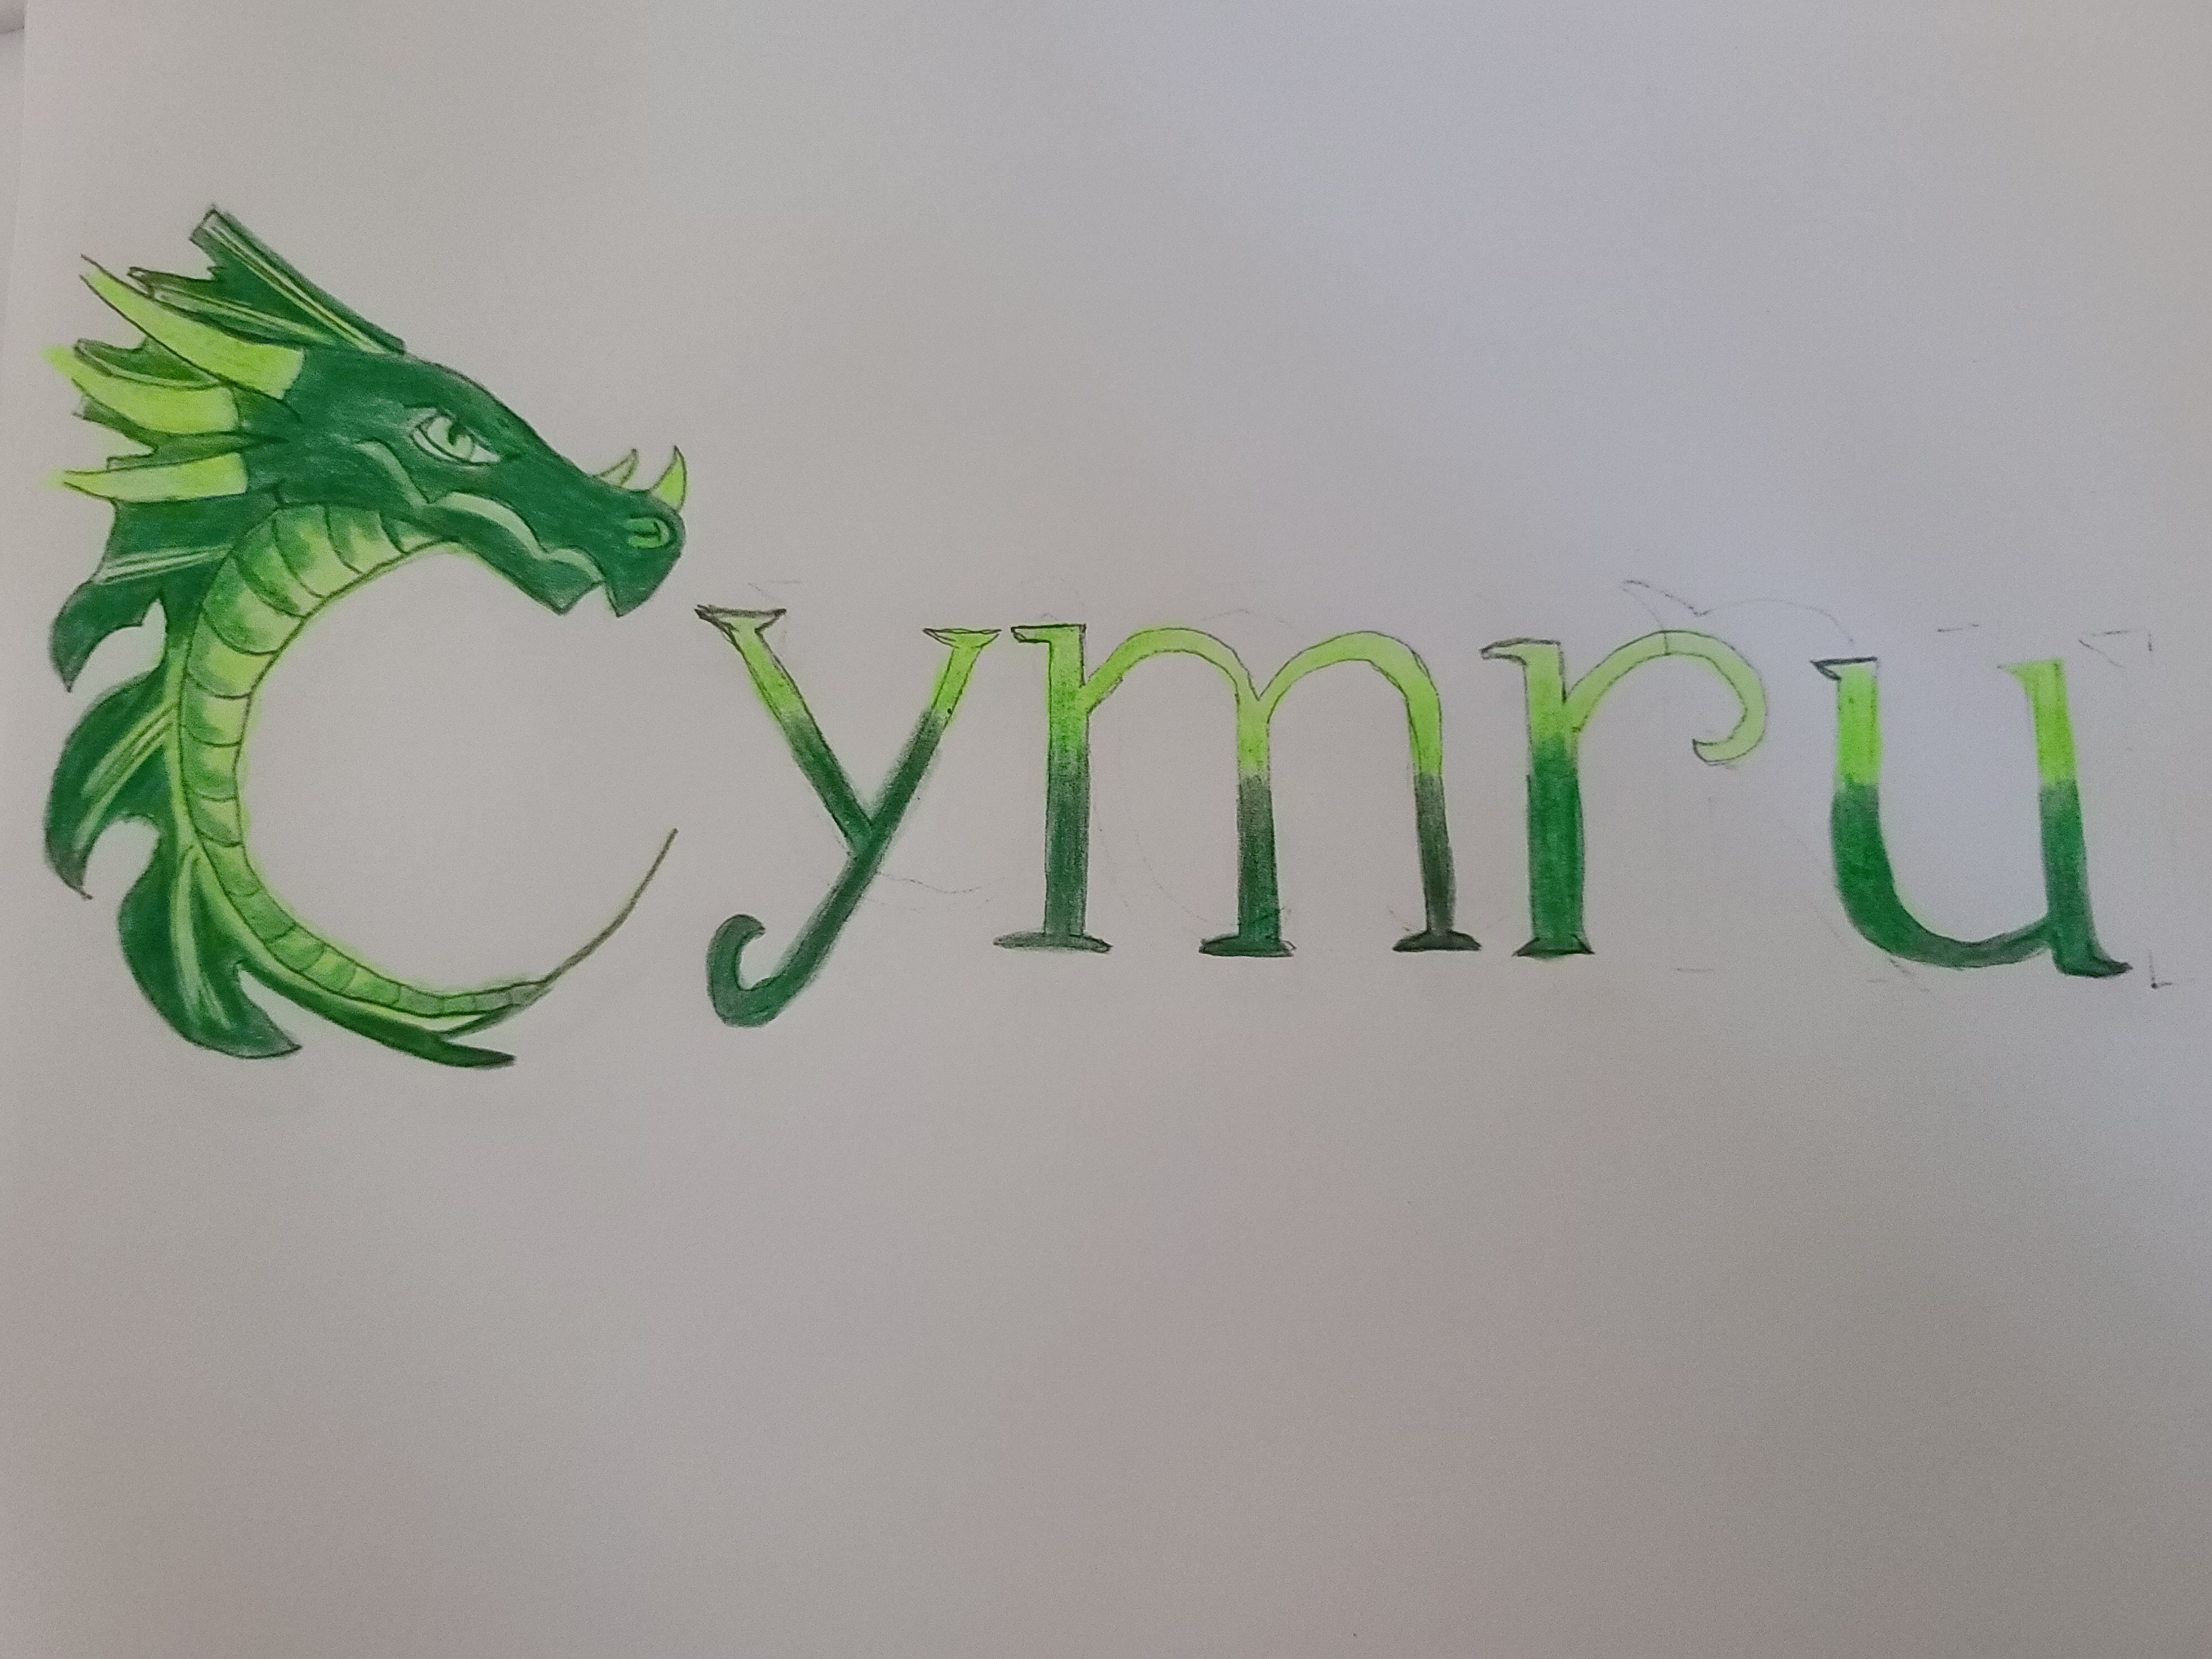 CYMRU LLC